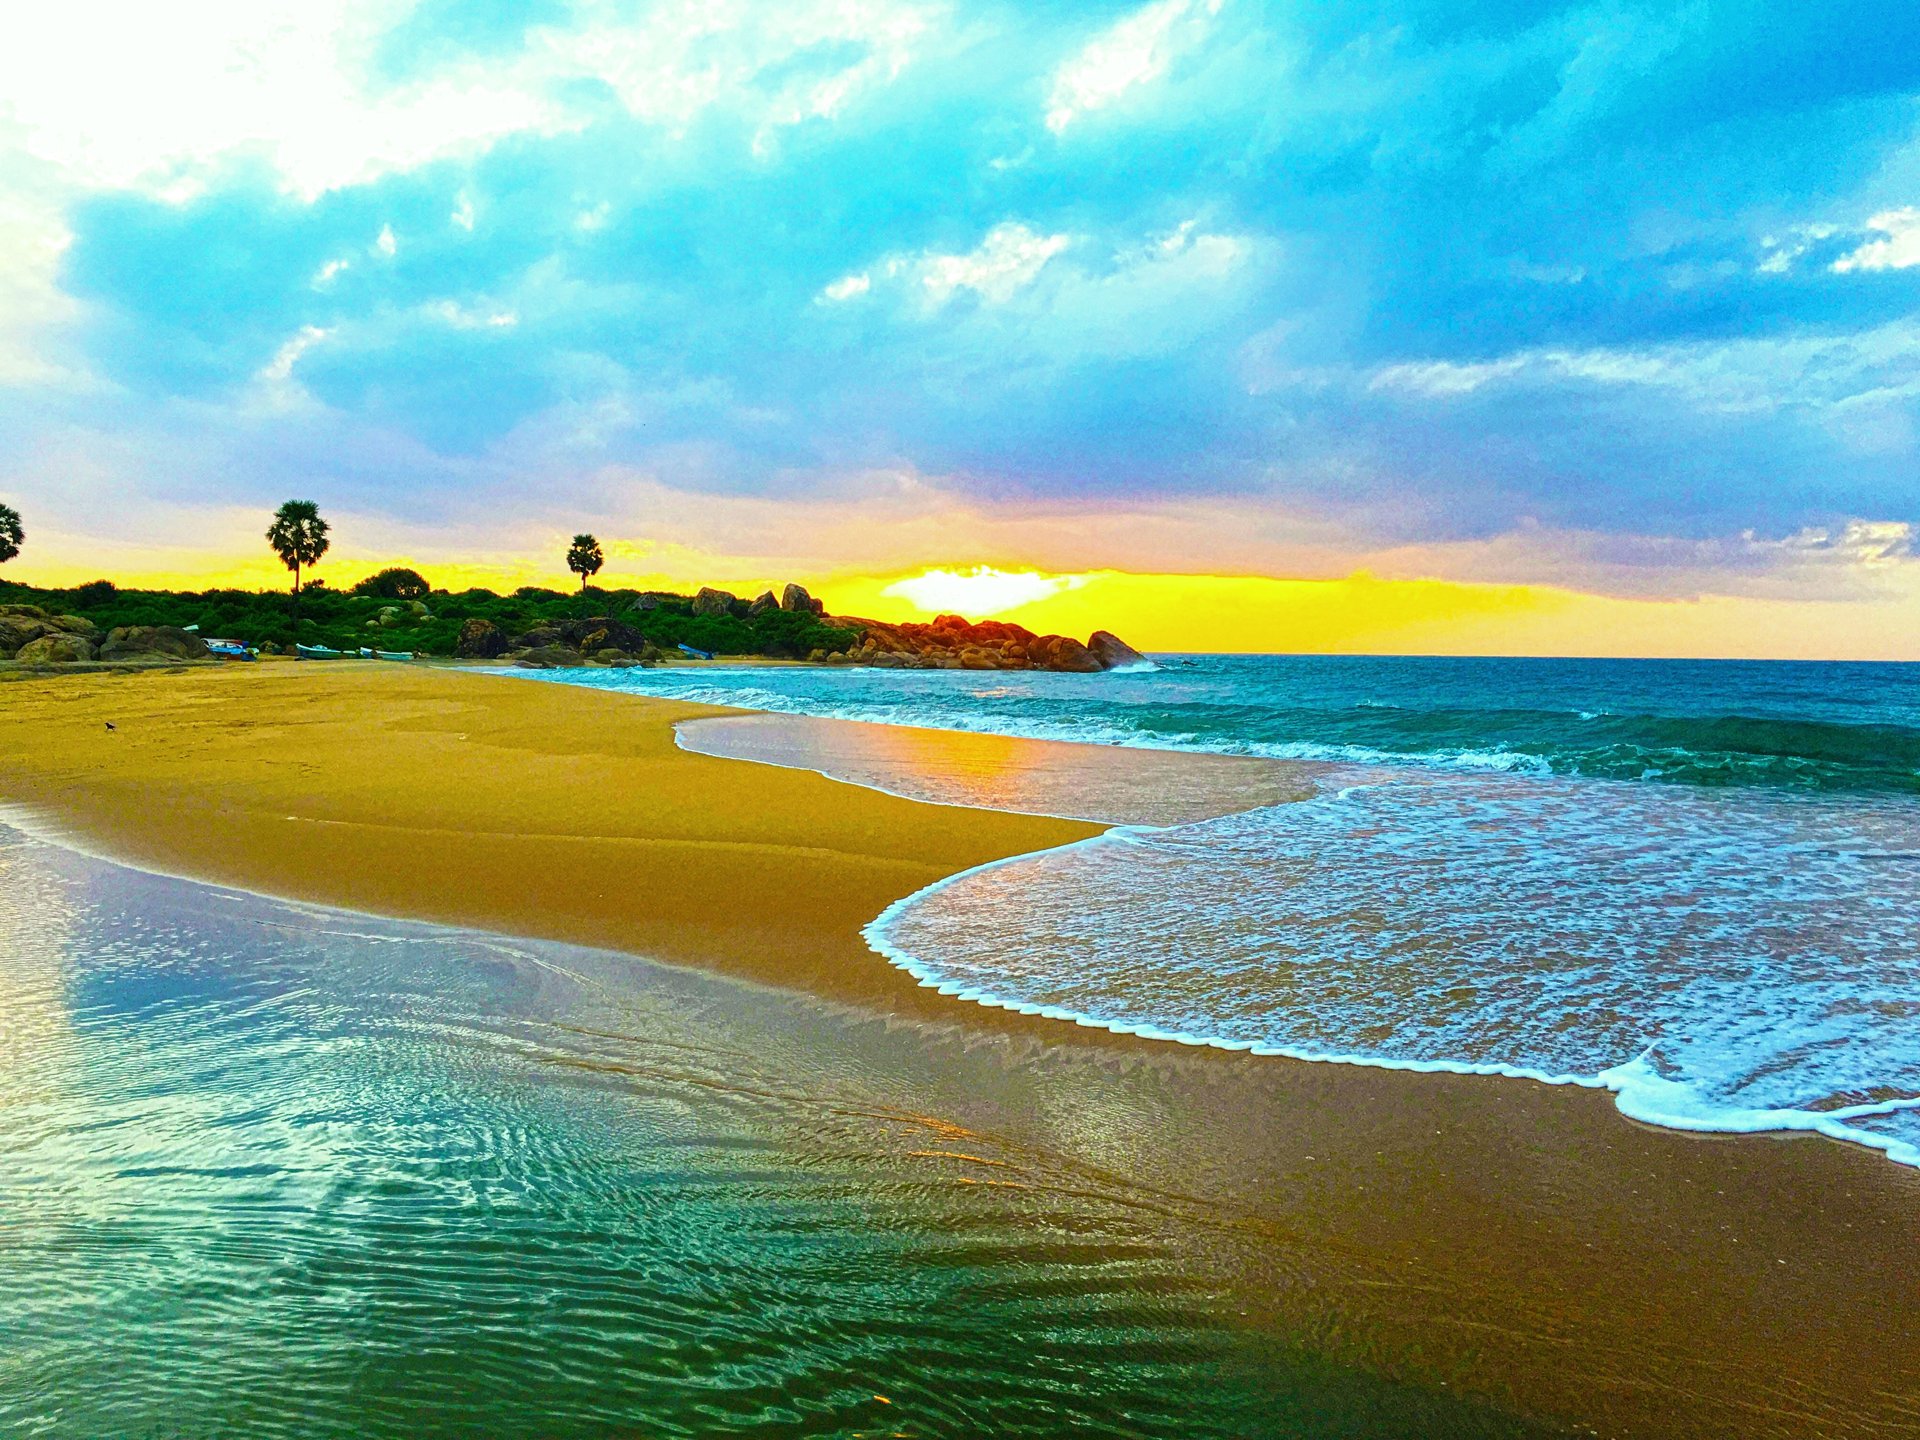 Top hình nền bãi biển đẹp nhất thế giới - Hà Nội Spirit Of Place